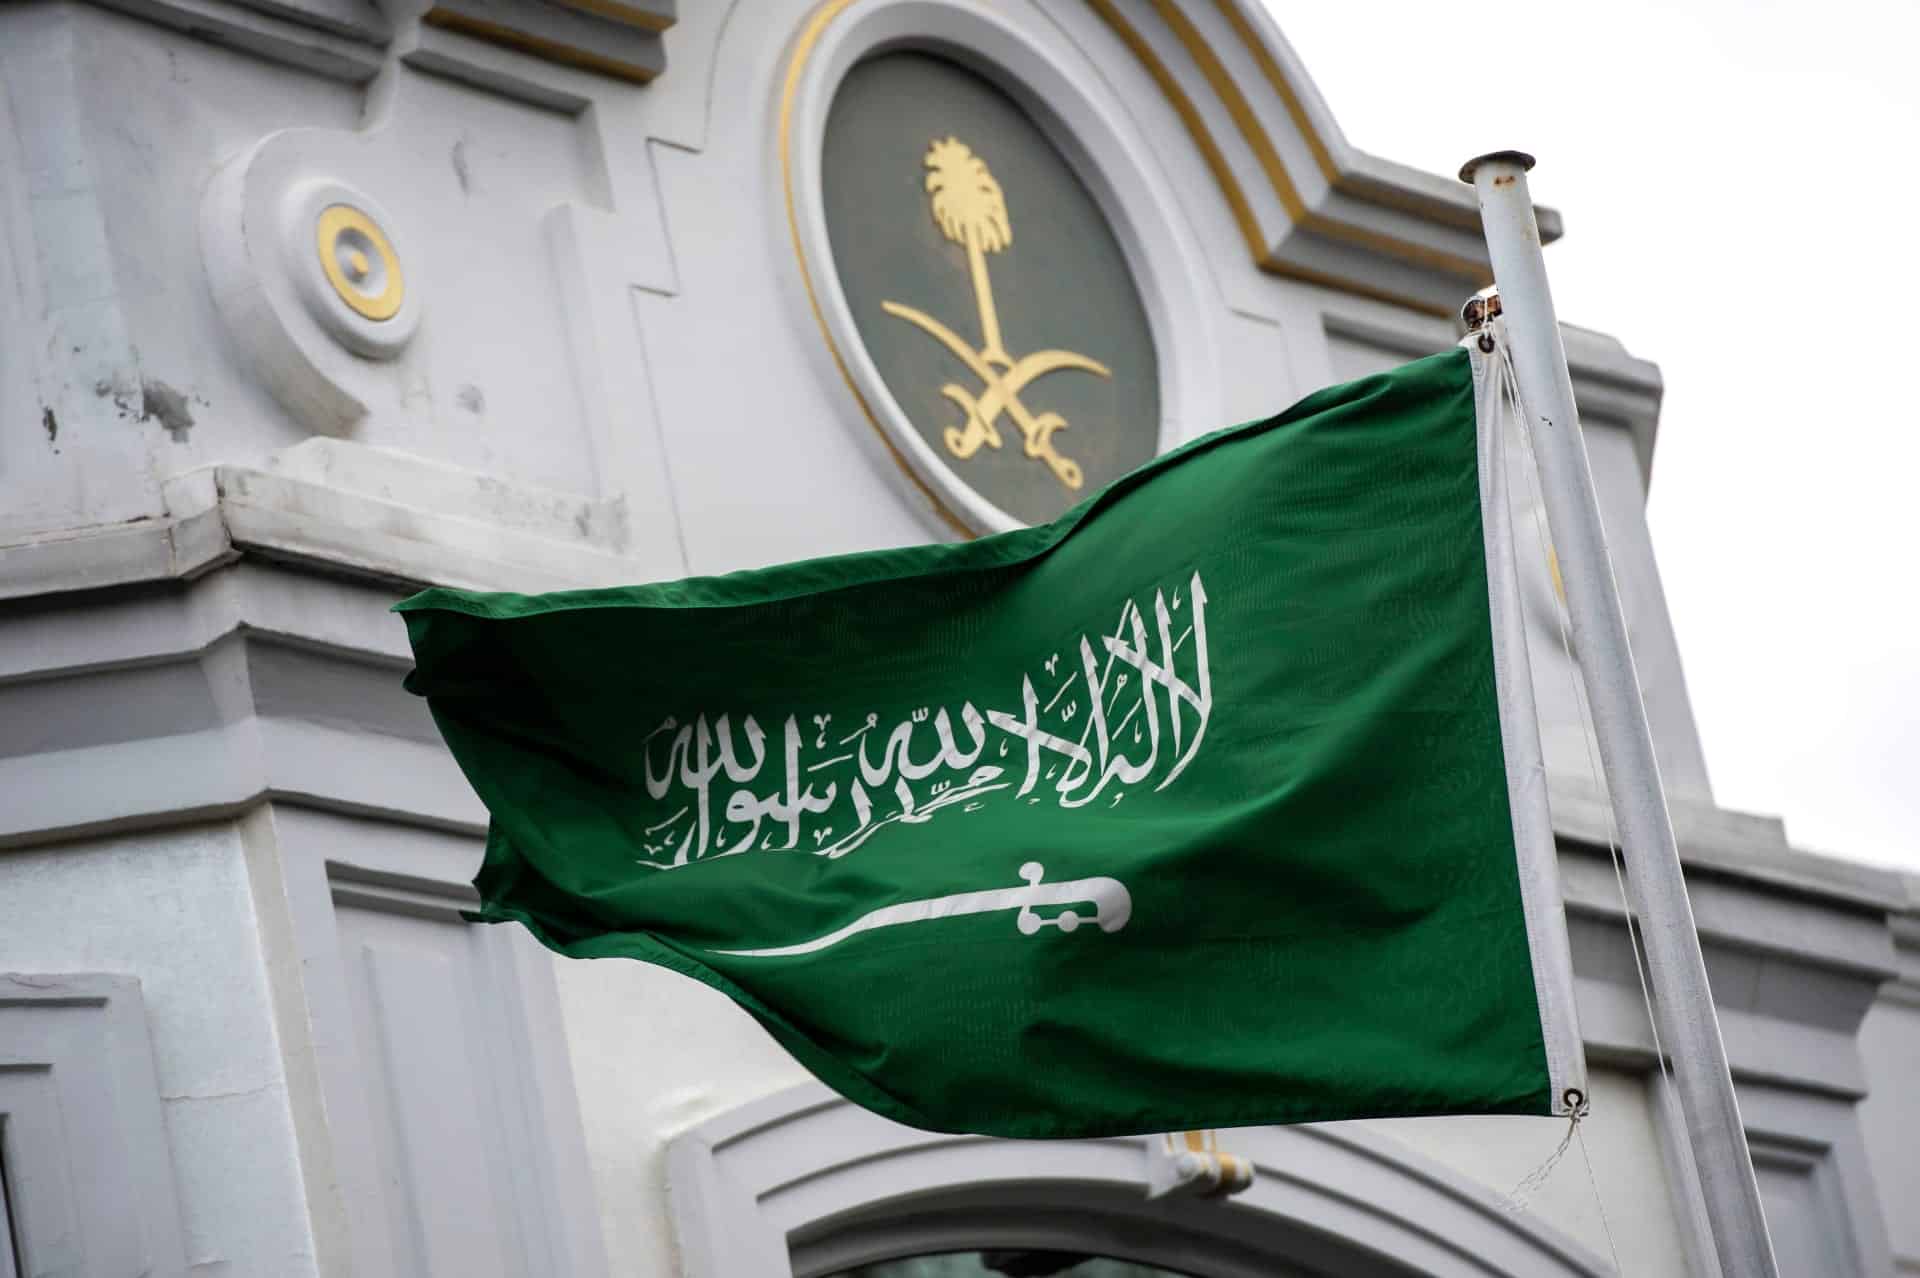 سيفان ونخلة في العلم السعودي..ماذا يرمزان؟